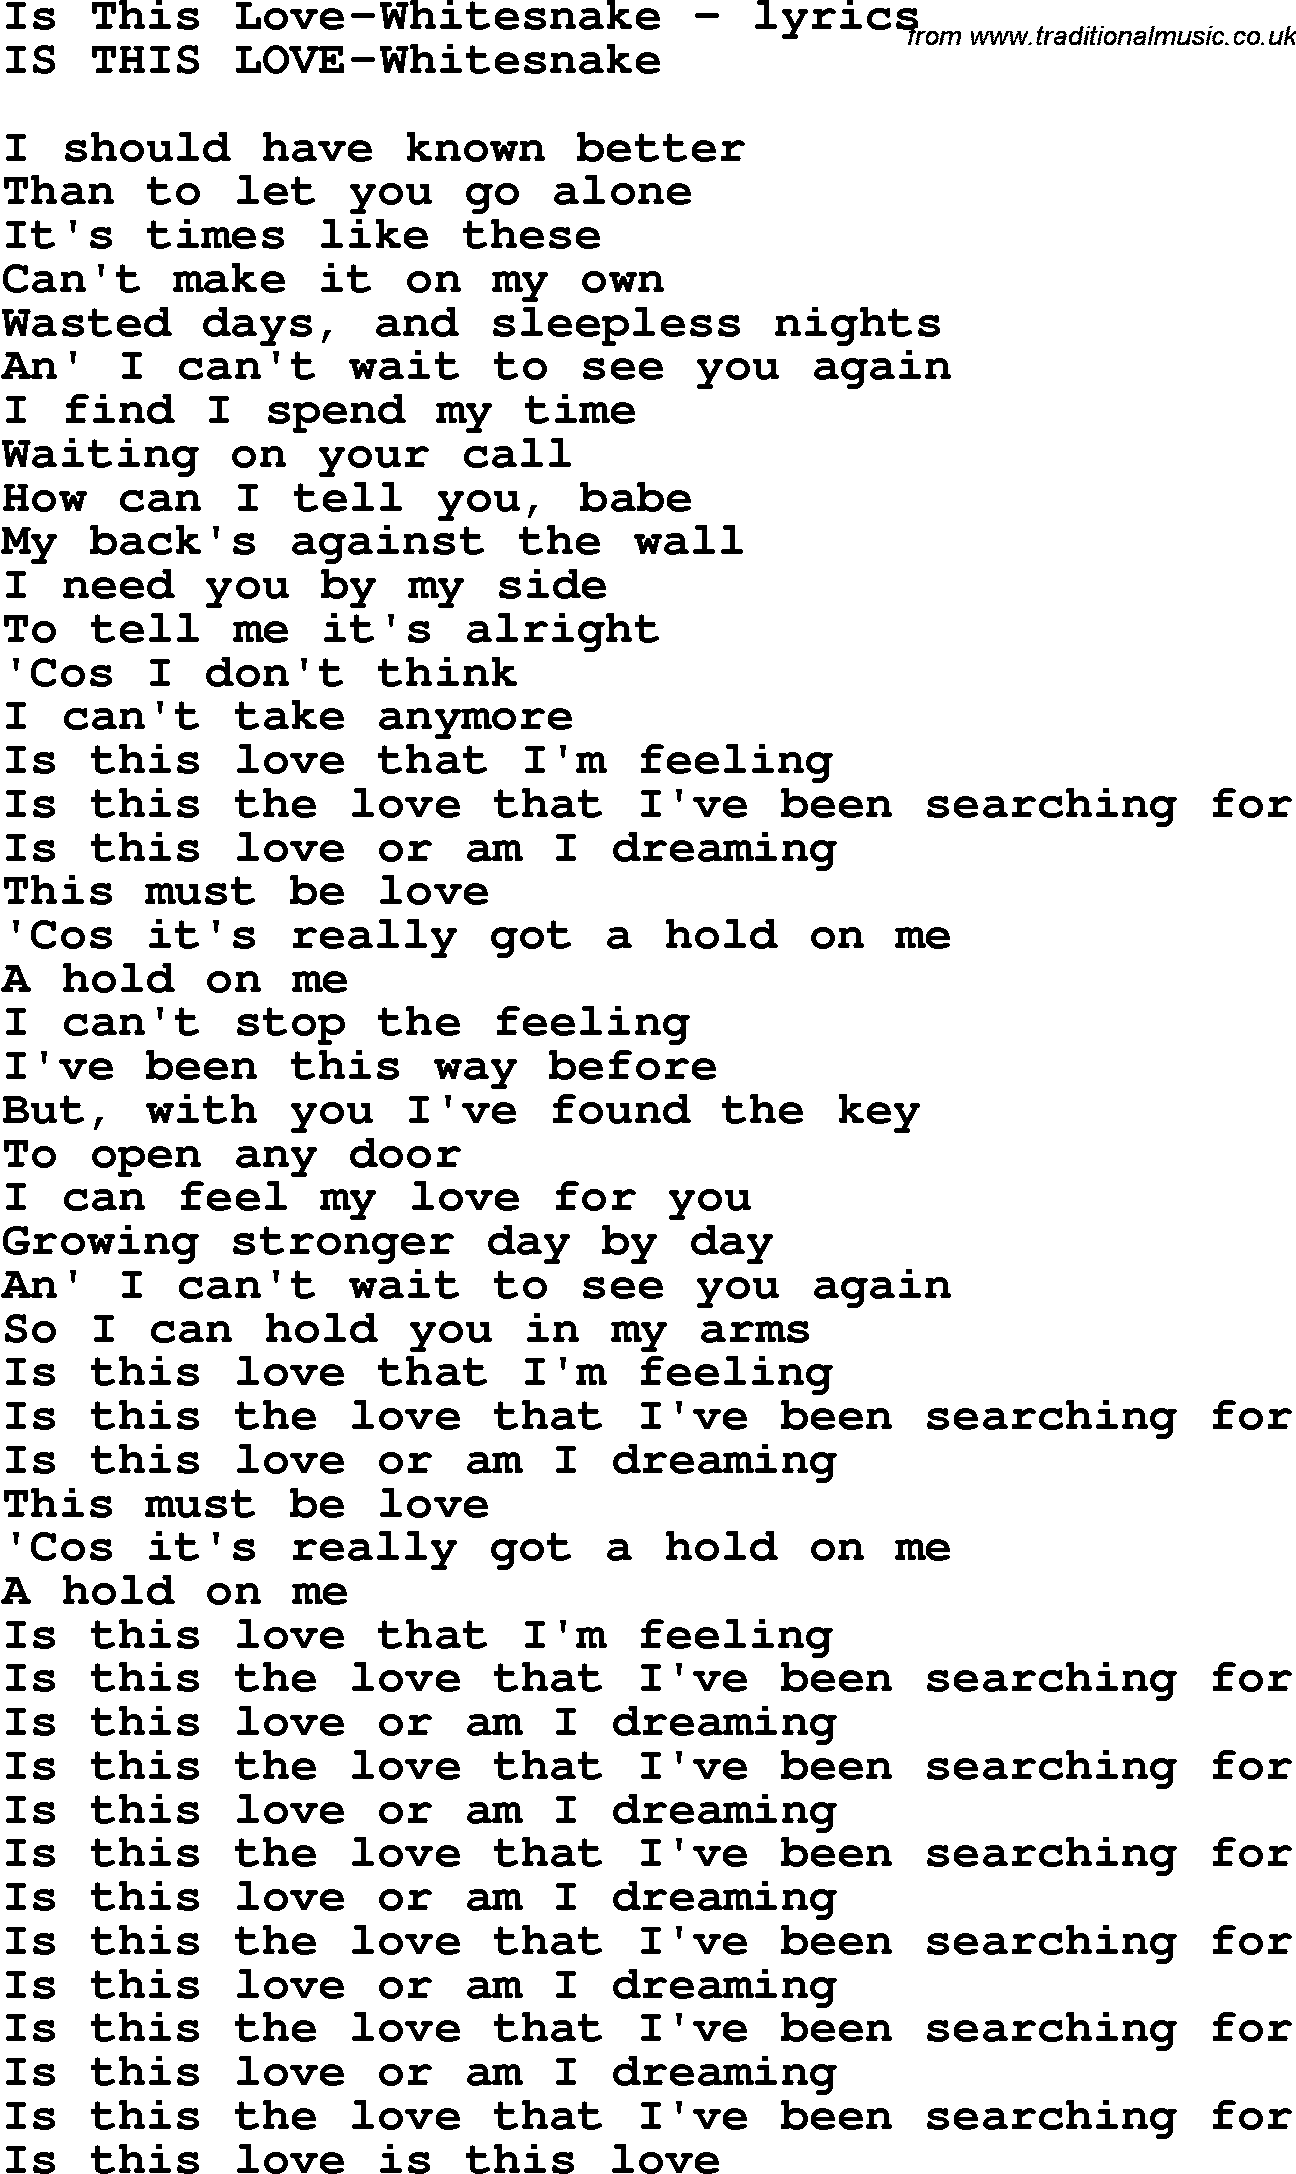 Love Song Lyrics for: Is This Love-Whitesnake